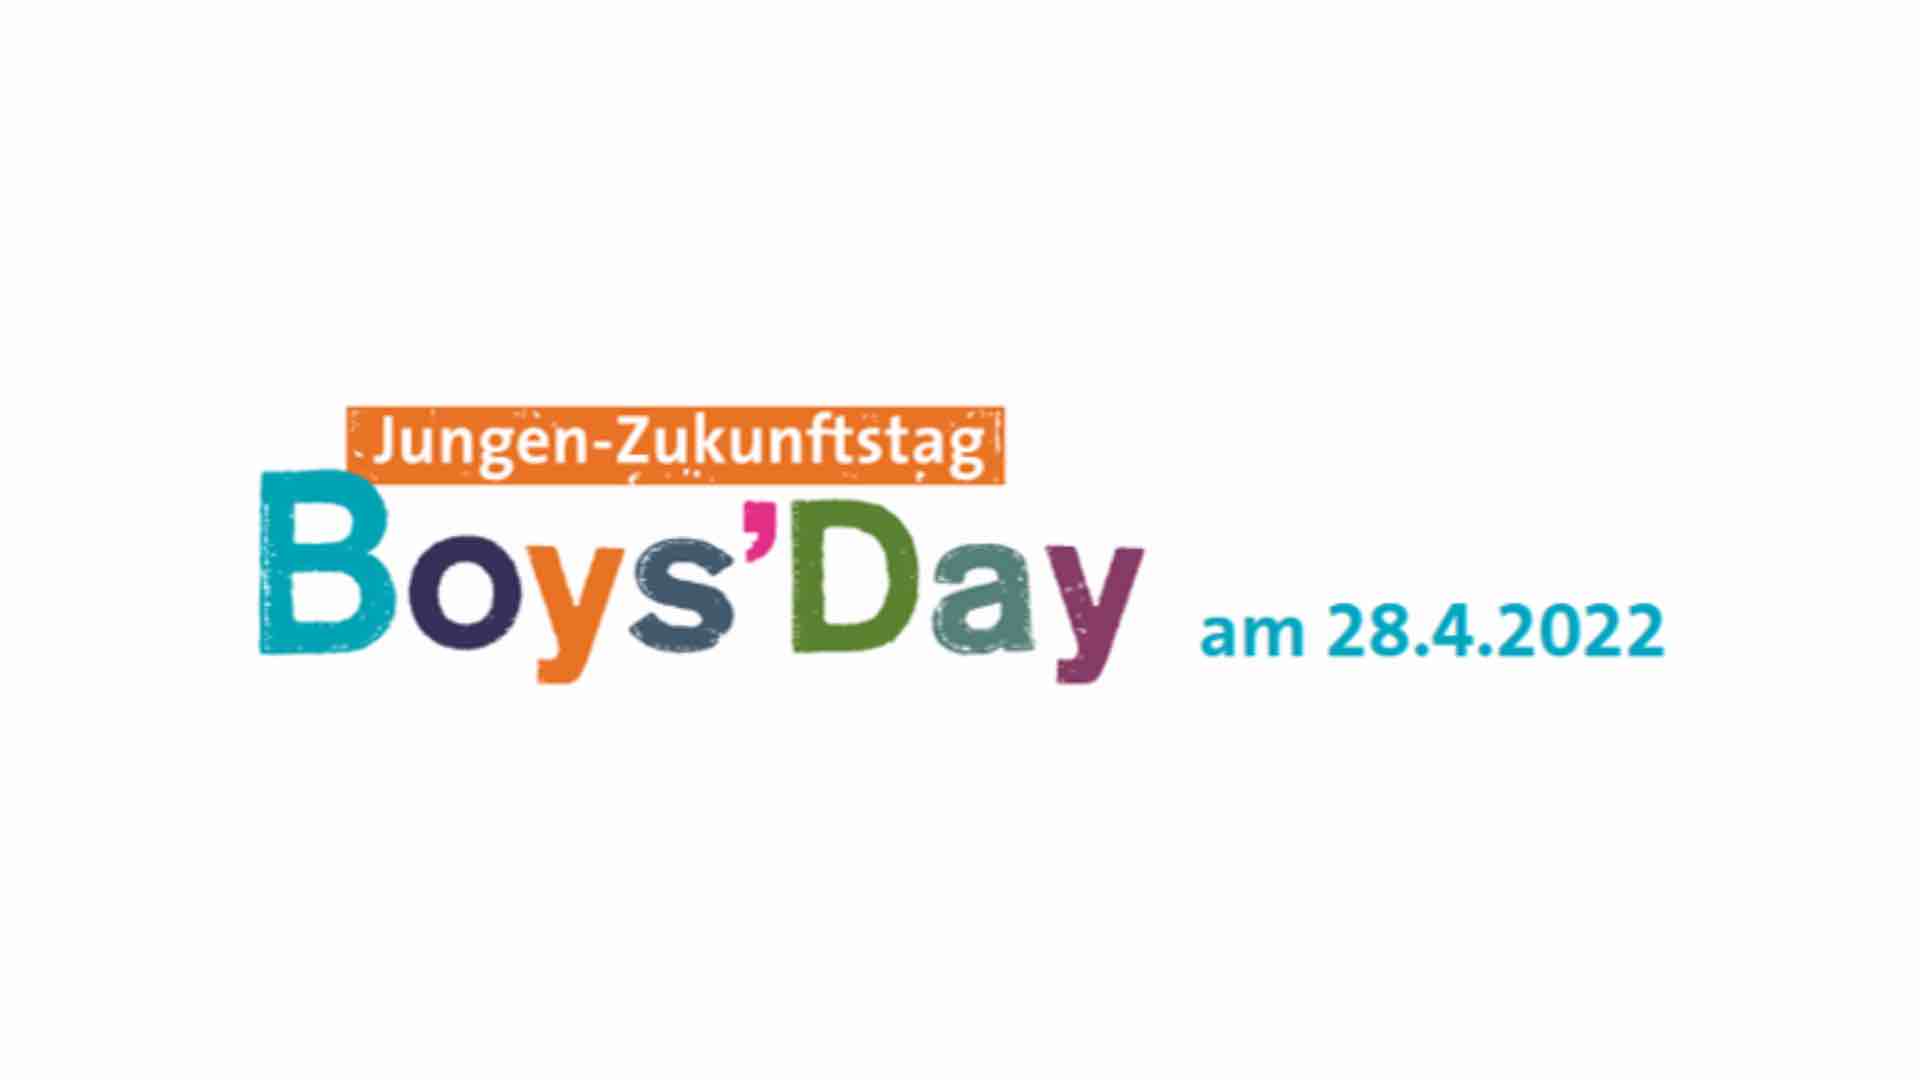 Boys'Day des Bayerischen Staatsministerium für Familie, Arbeit und Soziales